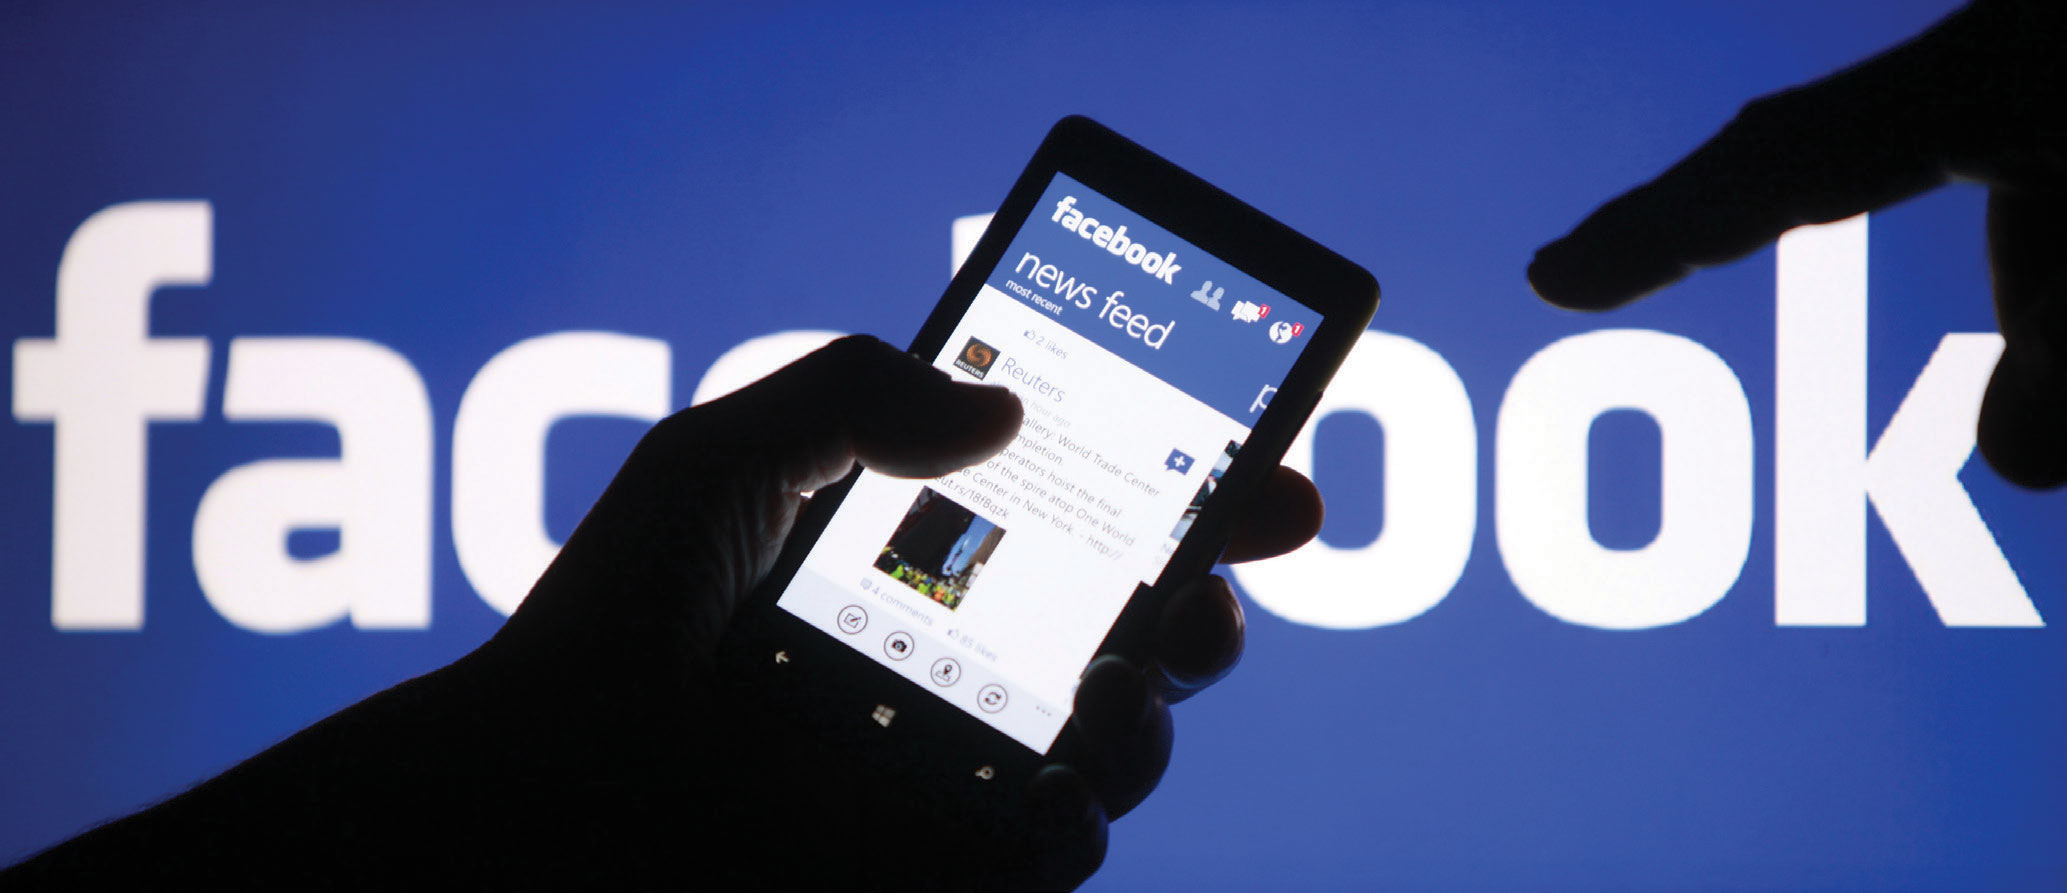 Facebook và câu chuyện quản trị khủng hoảng truyền thông bất động sản